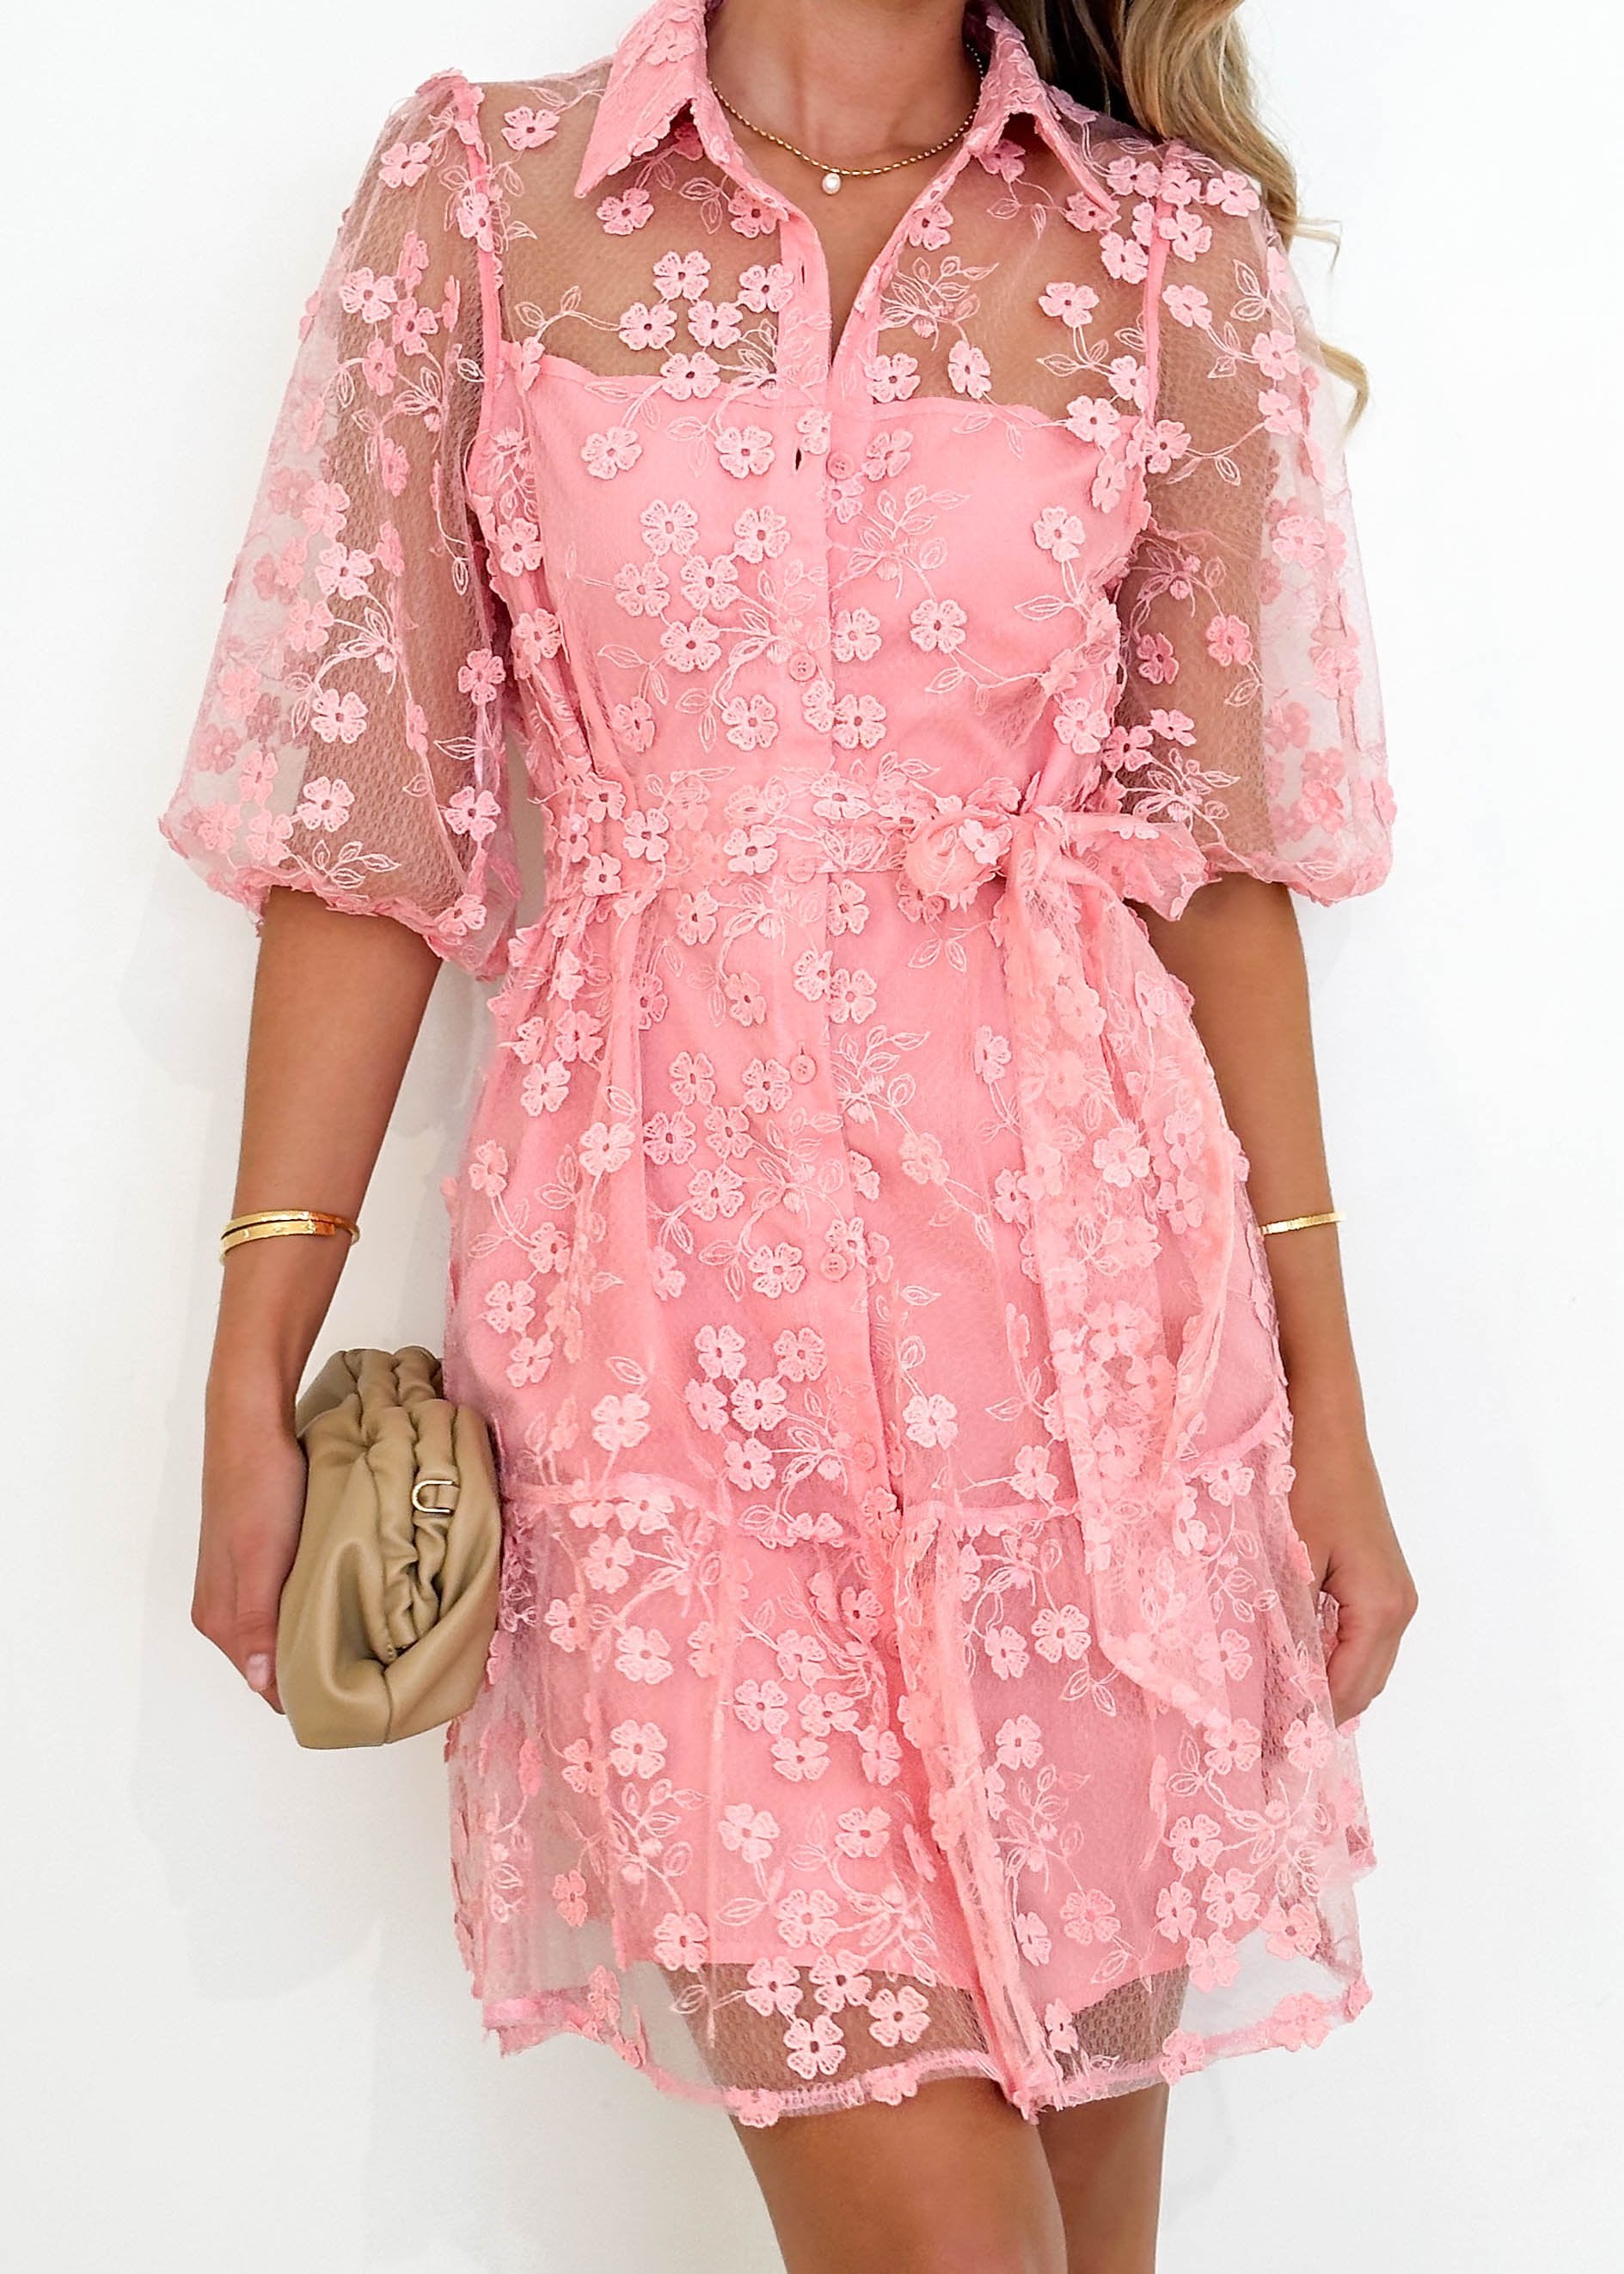 Riteski Embroidered Dress - Pink